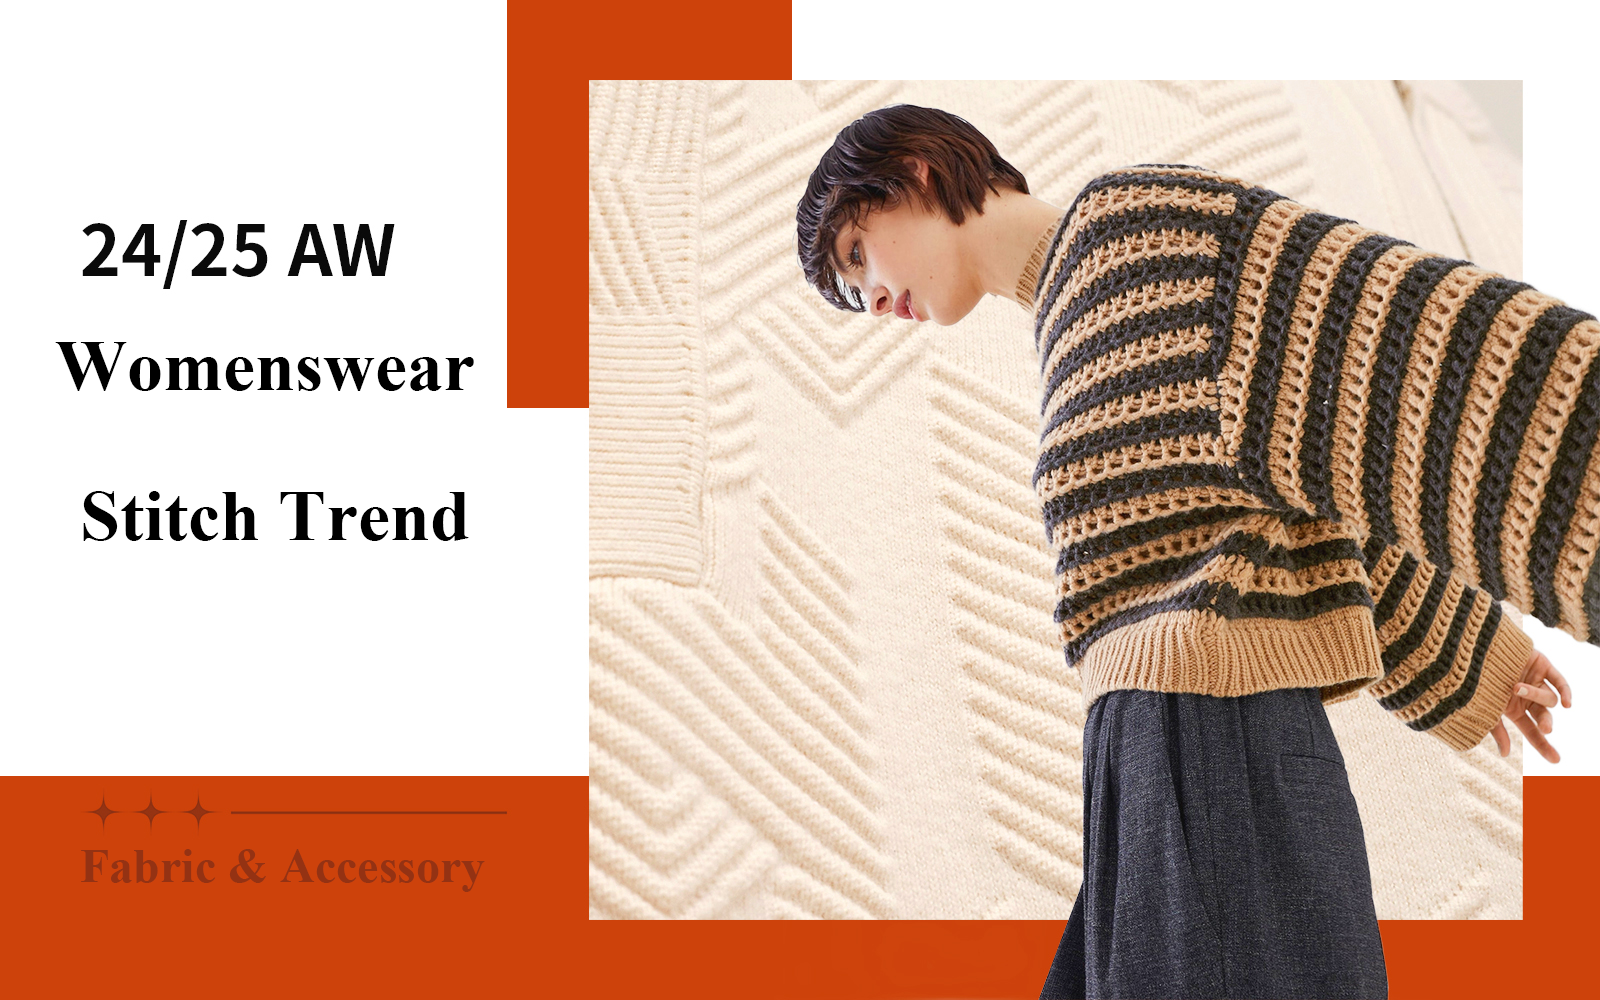 A/W 24/25 Stitch Trend of Women's Knitwear